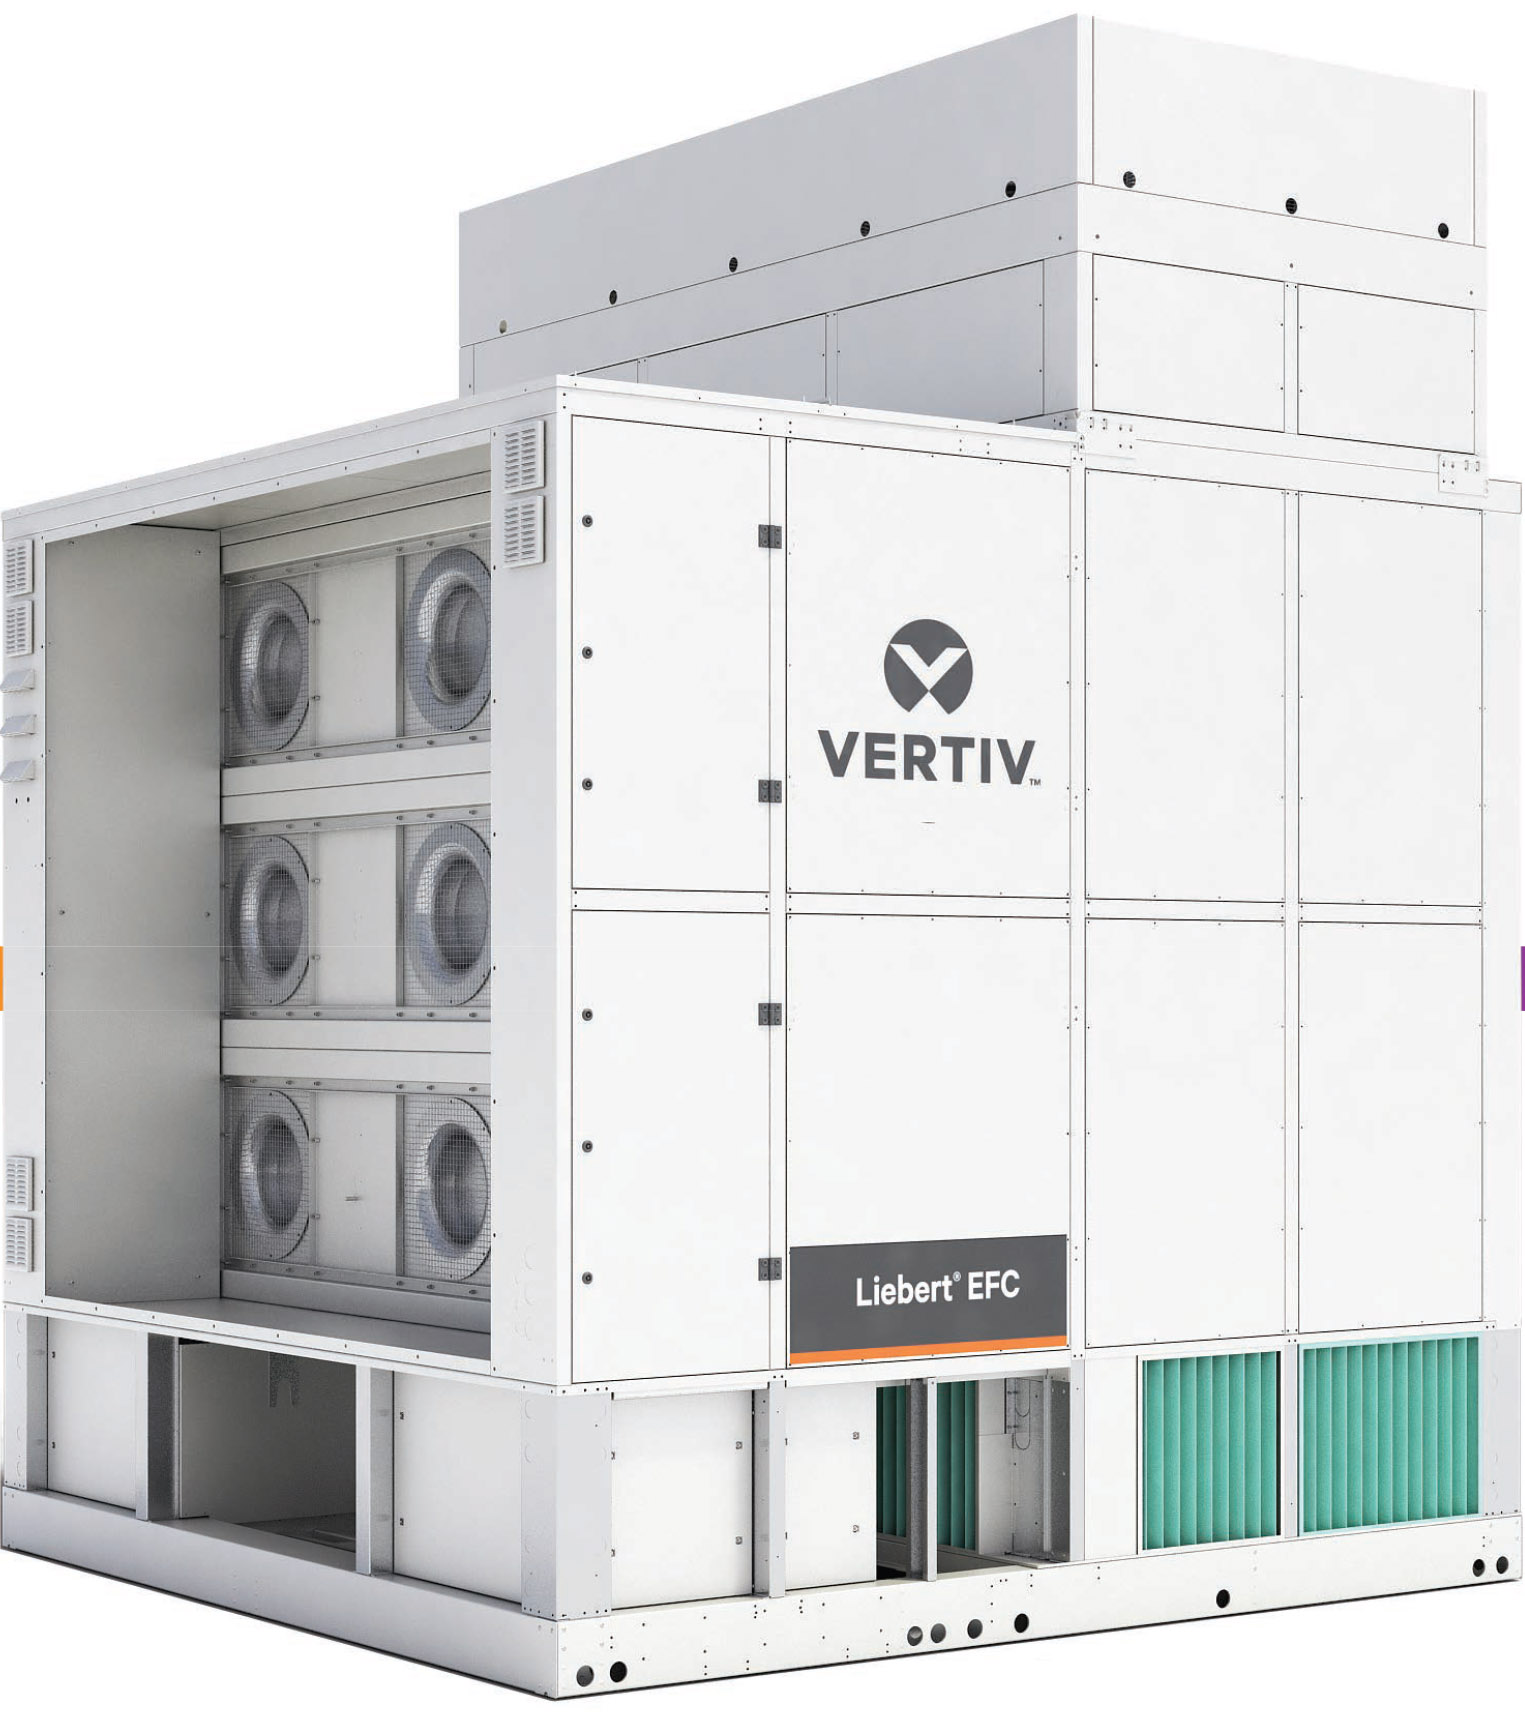 Vertiv™ Liebert® EFC, soluția de răcire prin evaporare indirectă extrem de eficientă, cu compozit HE